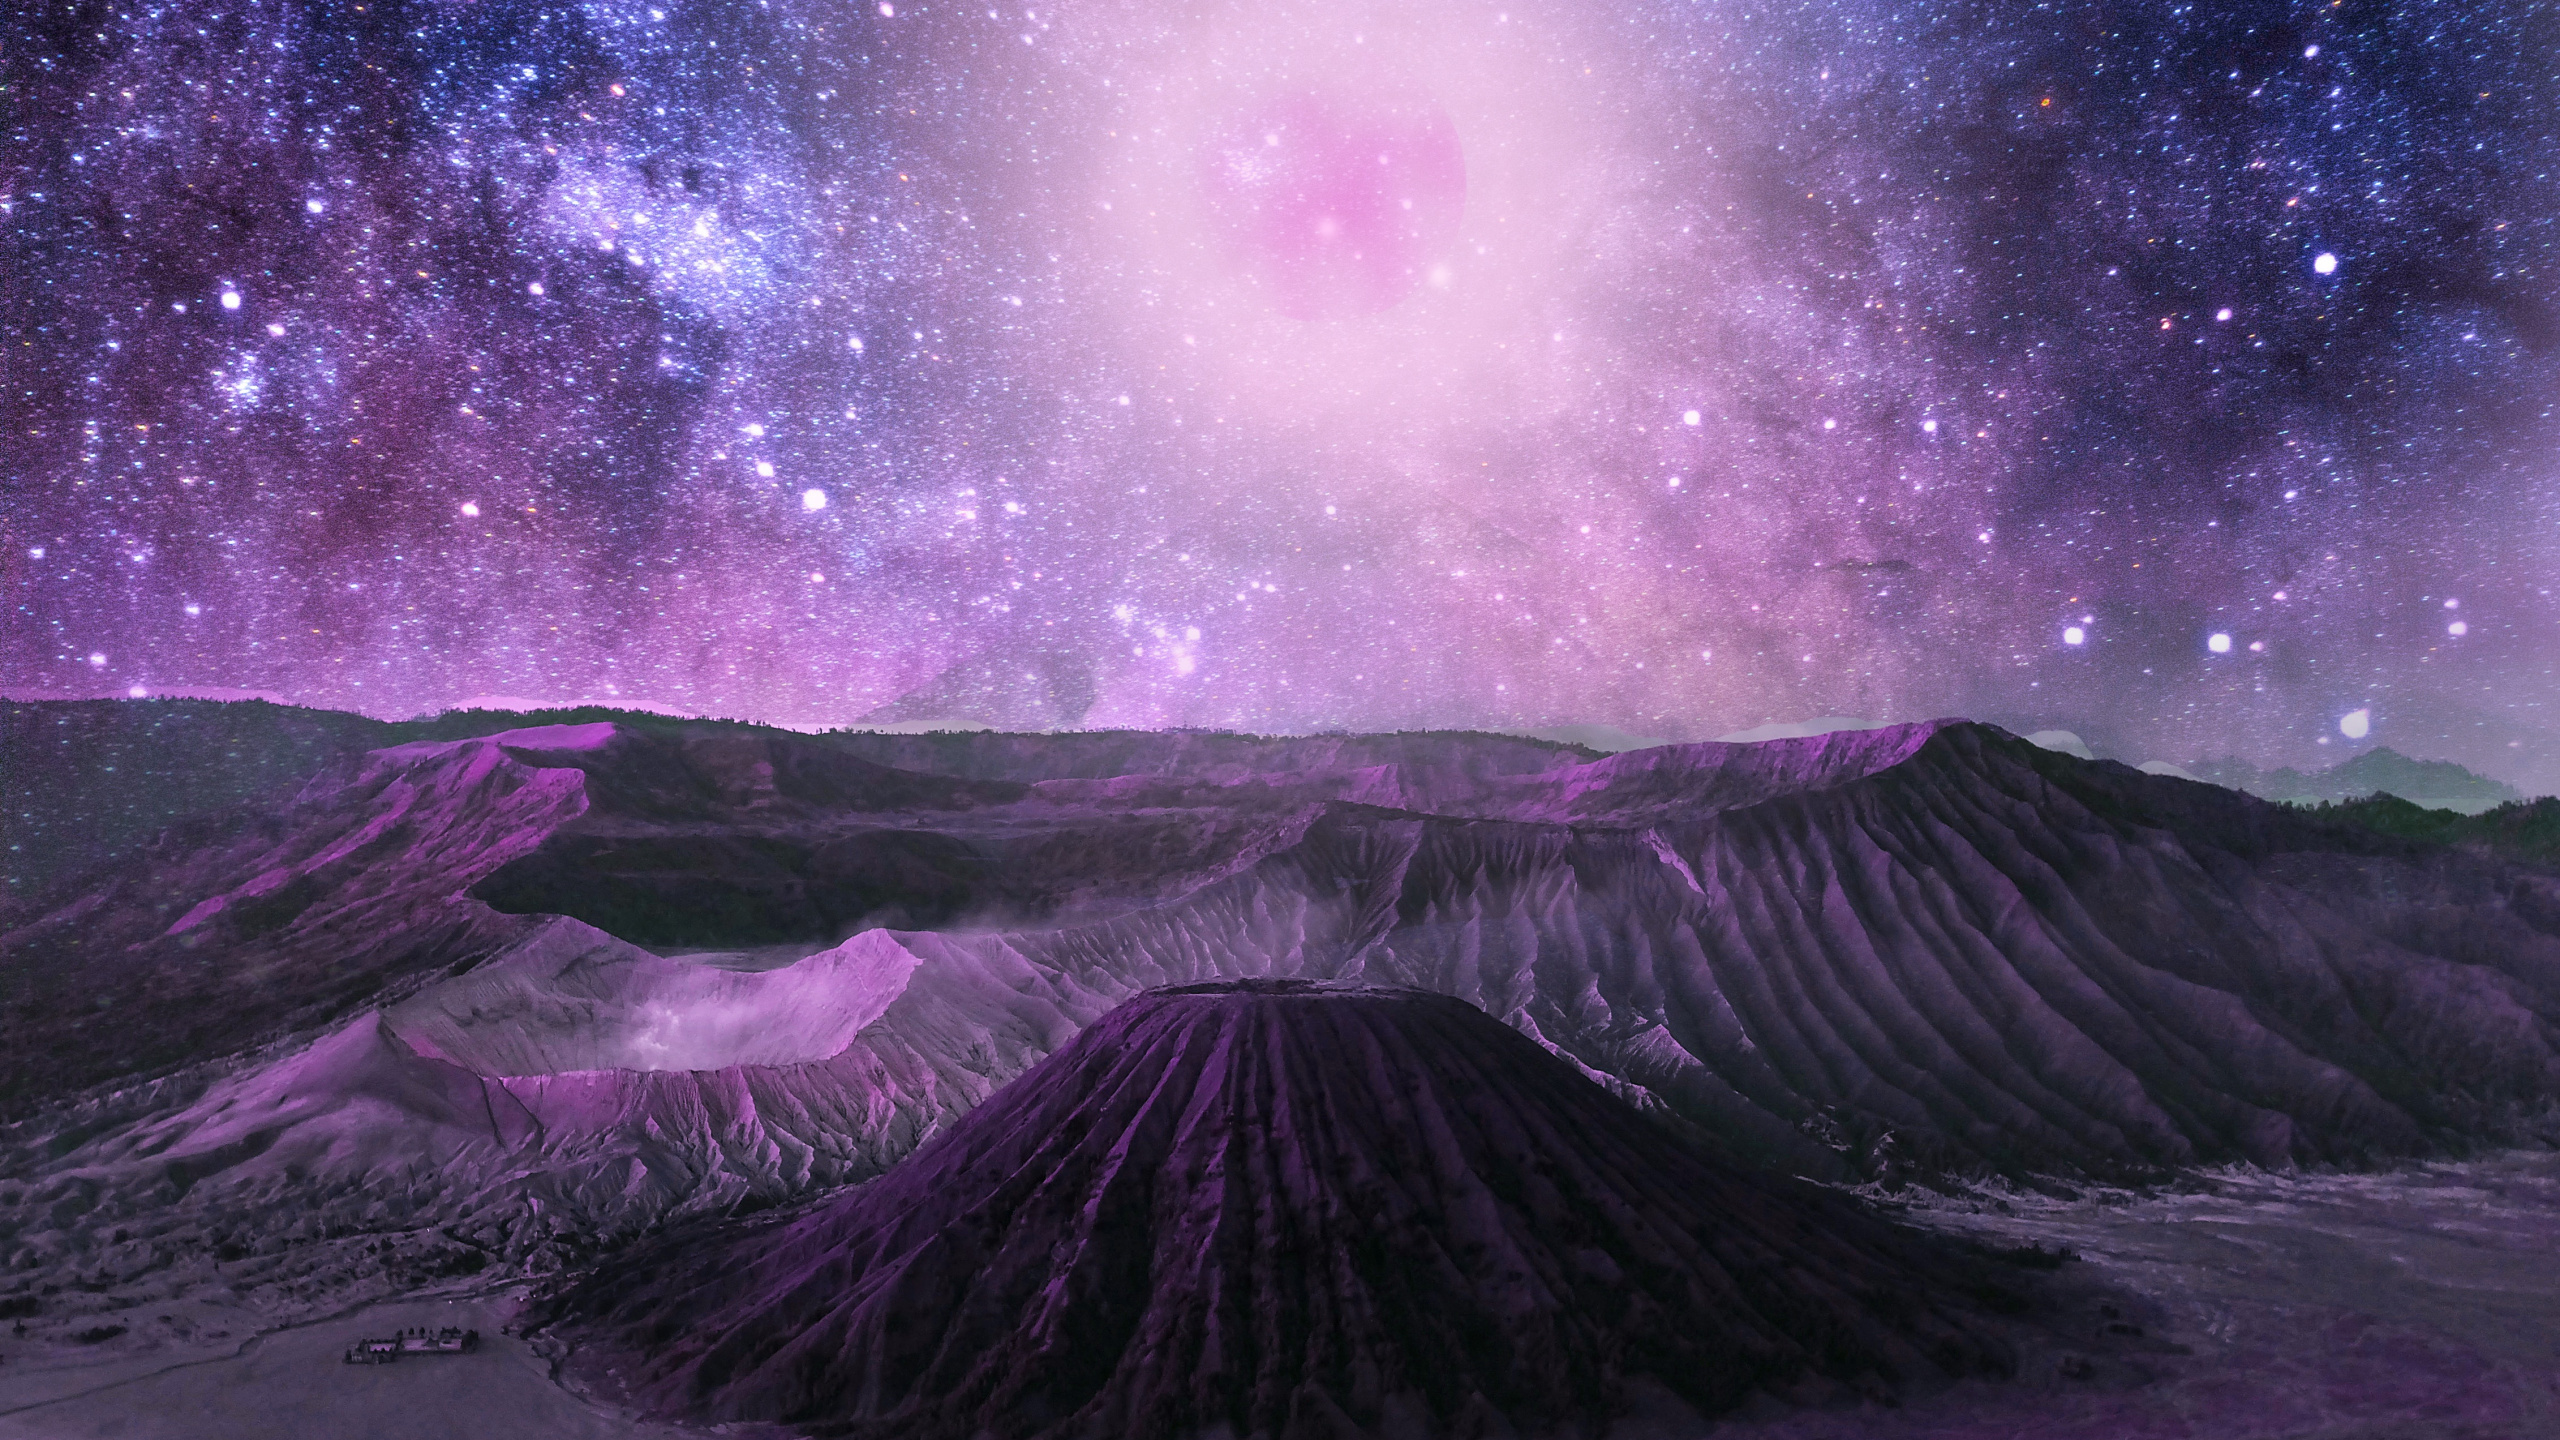 宇宙, 性质, 紫色的, 紫罗兰色, 气氛 壁纸 2560x1440 允许